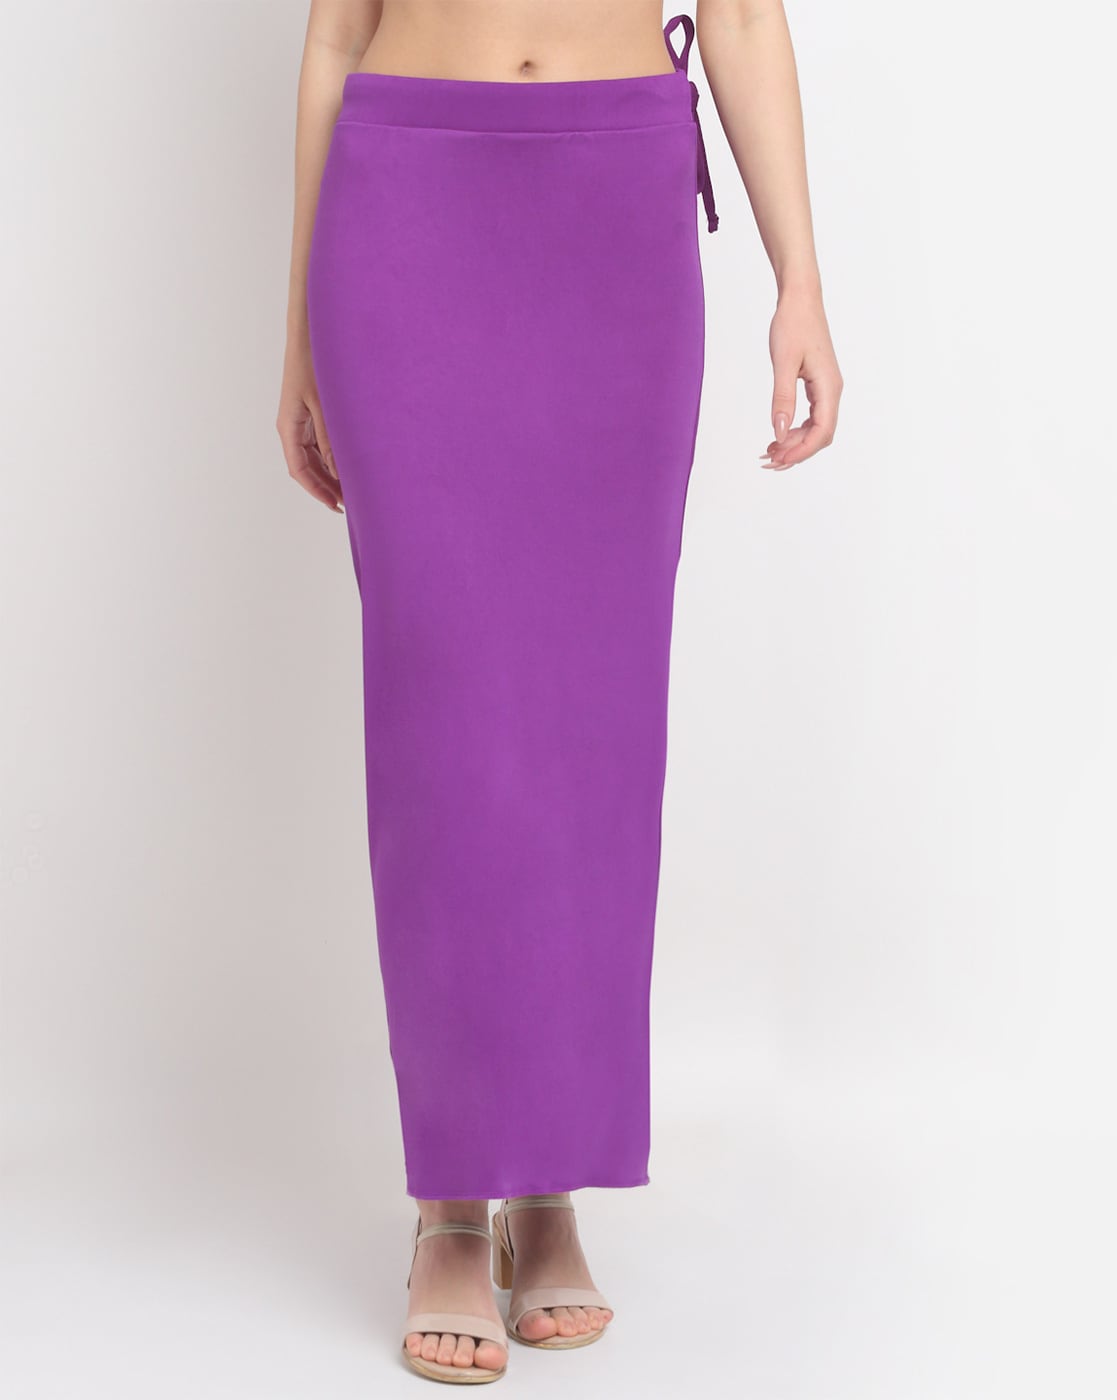 Buy Purple Shapewear for Women by Sugathari Online